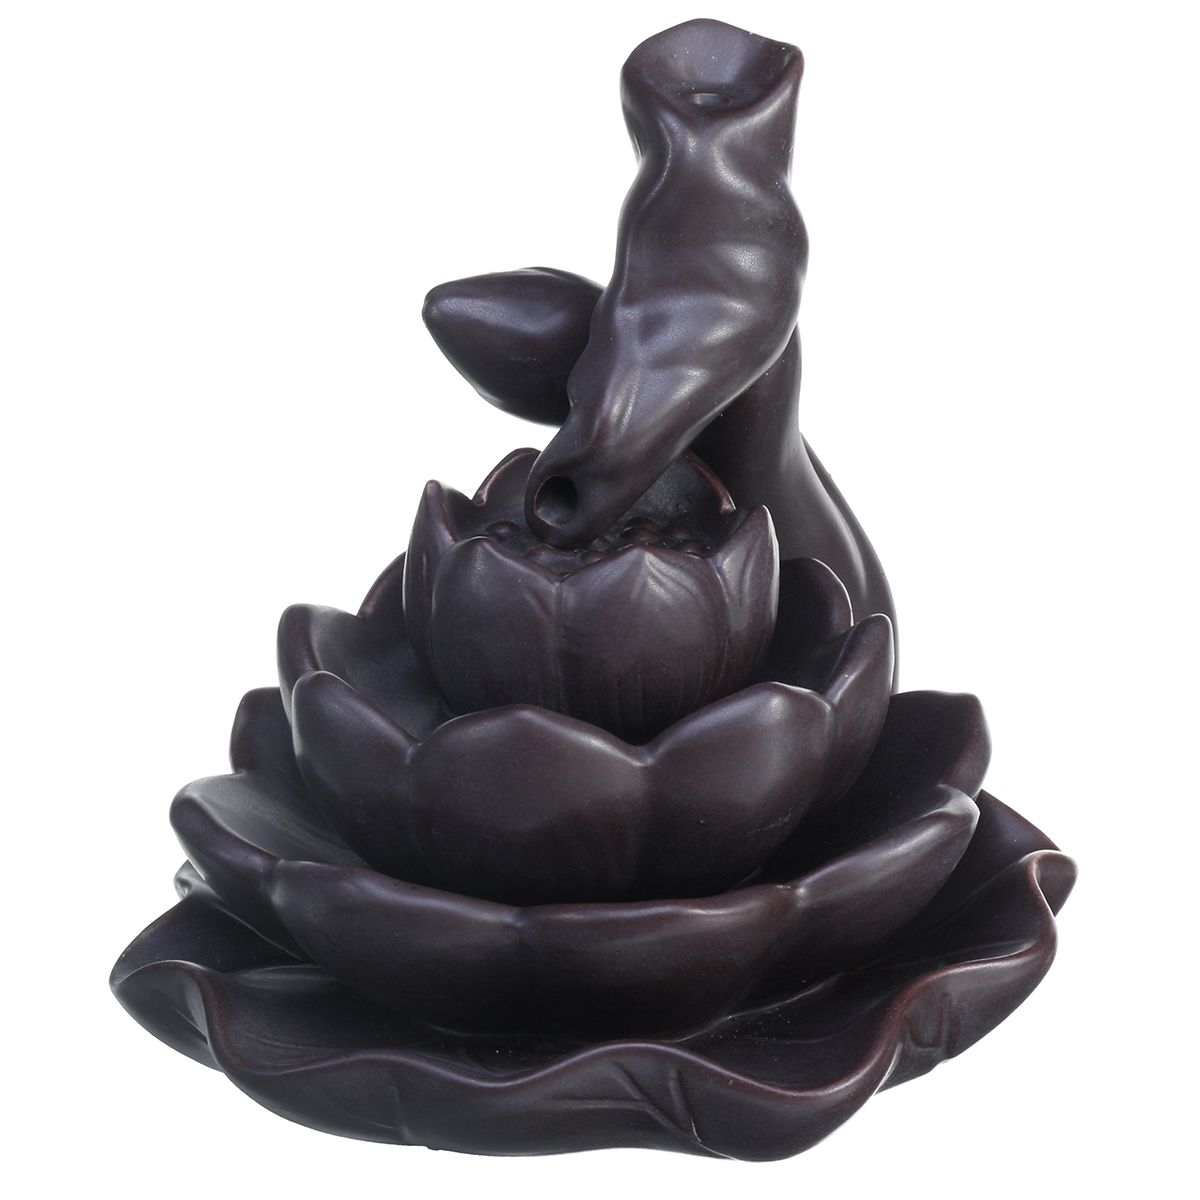 Ceramic-Backflow-Incense-Cones-Burner-Mountain-Waterfall-Lotus-Cones-Gift-1701802